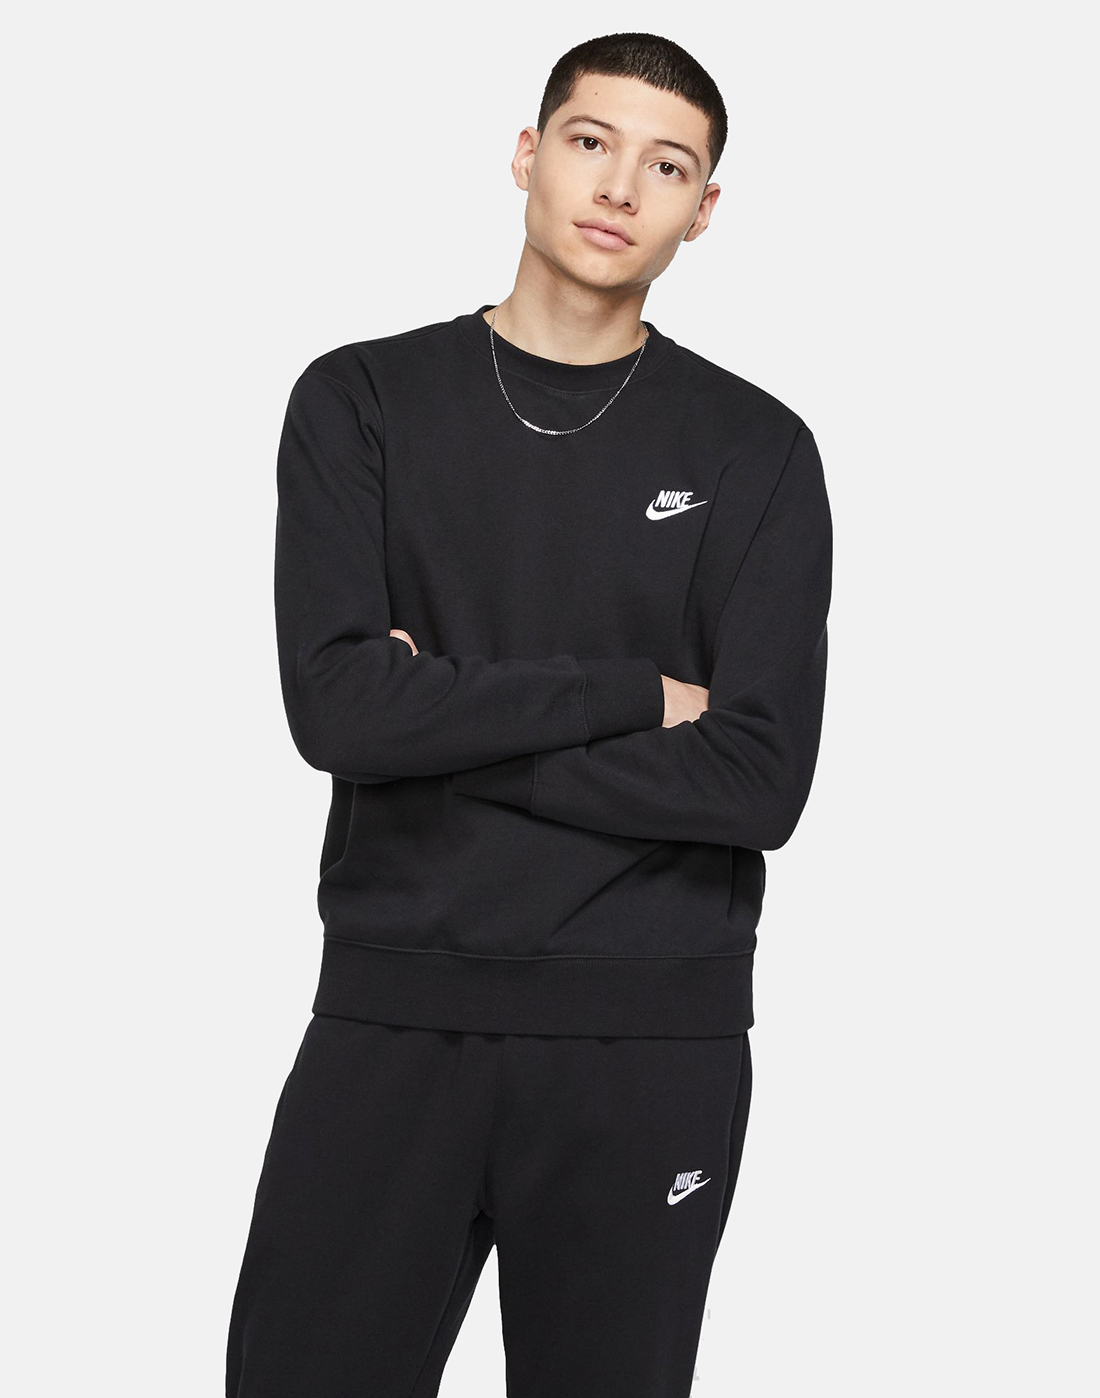 Men S Black Nike Sweatshirt Adidas Raven Trail Shoe Store Coupons Free [ 1398 x 1100 Pixel ]